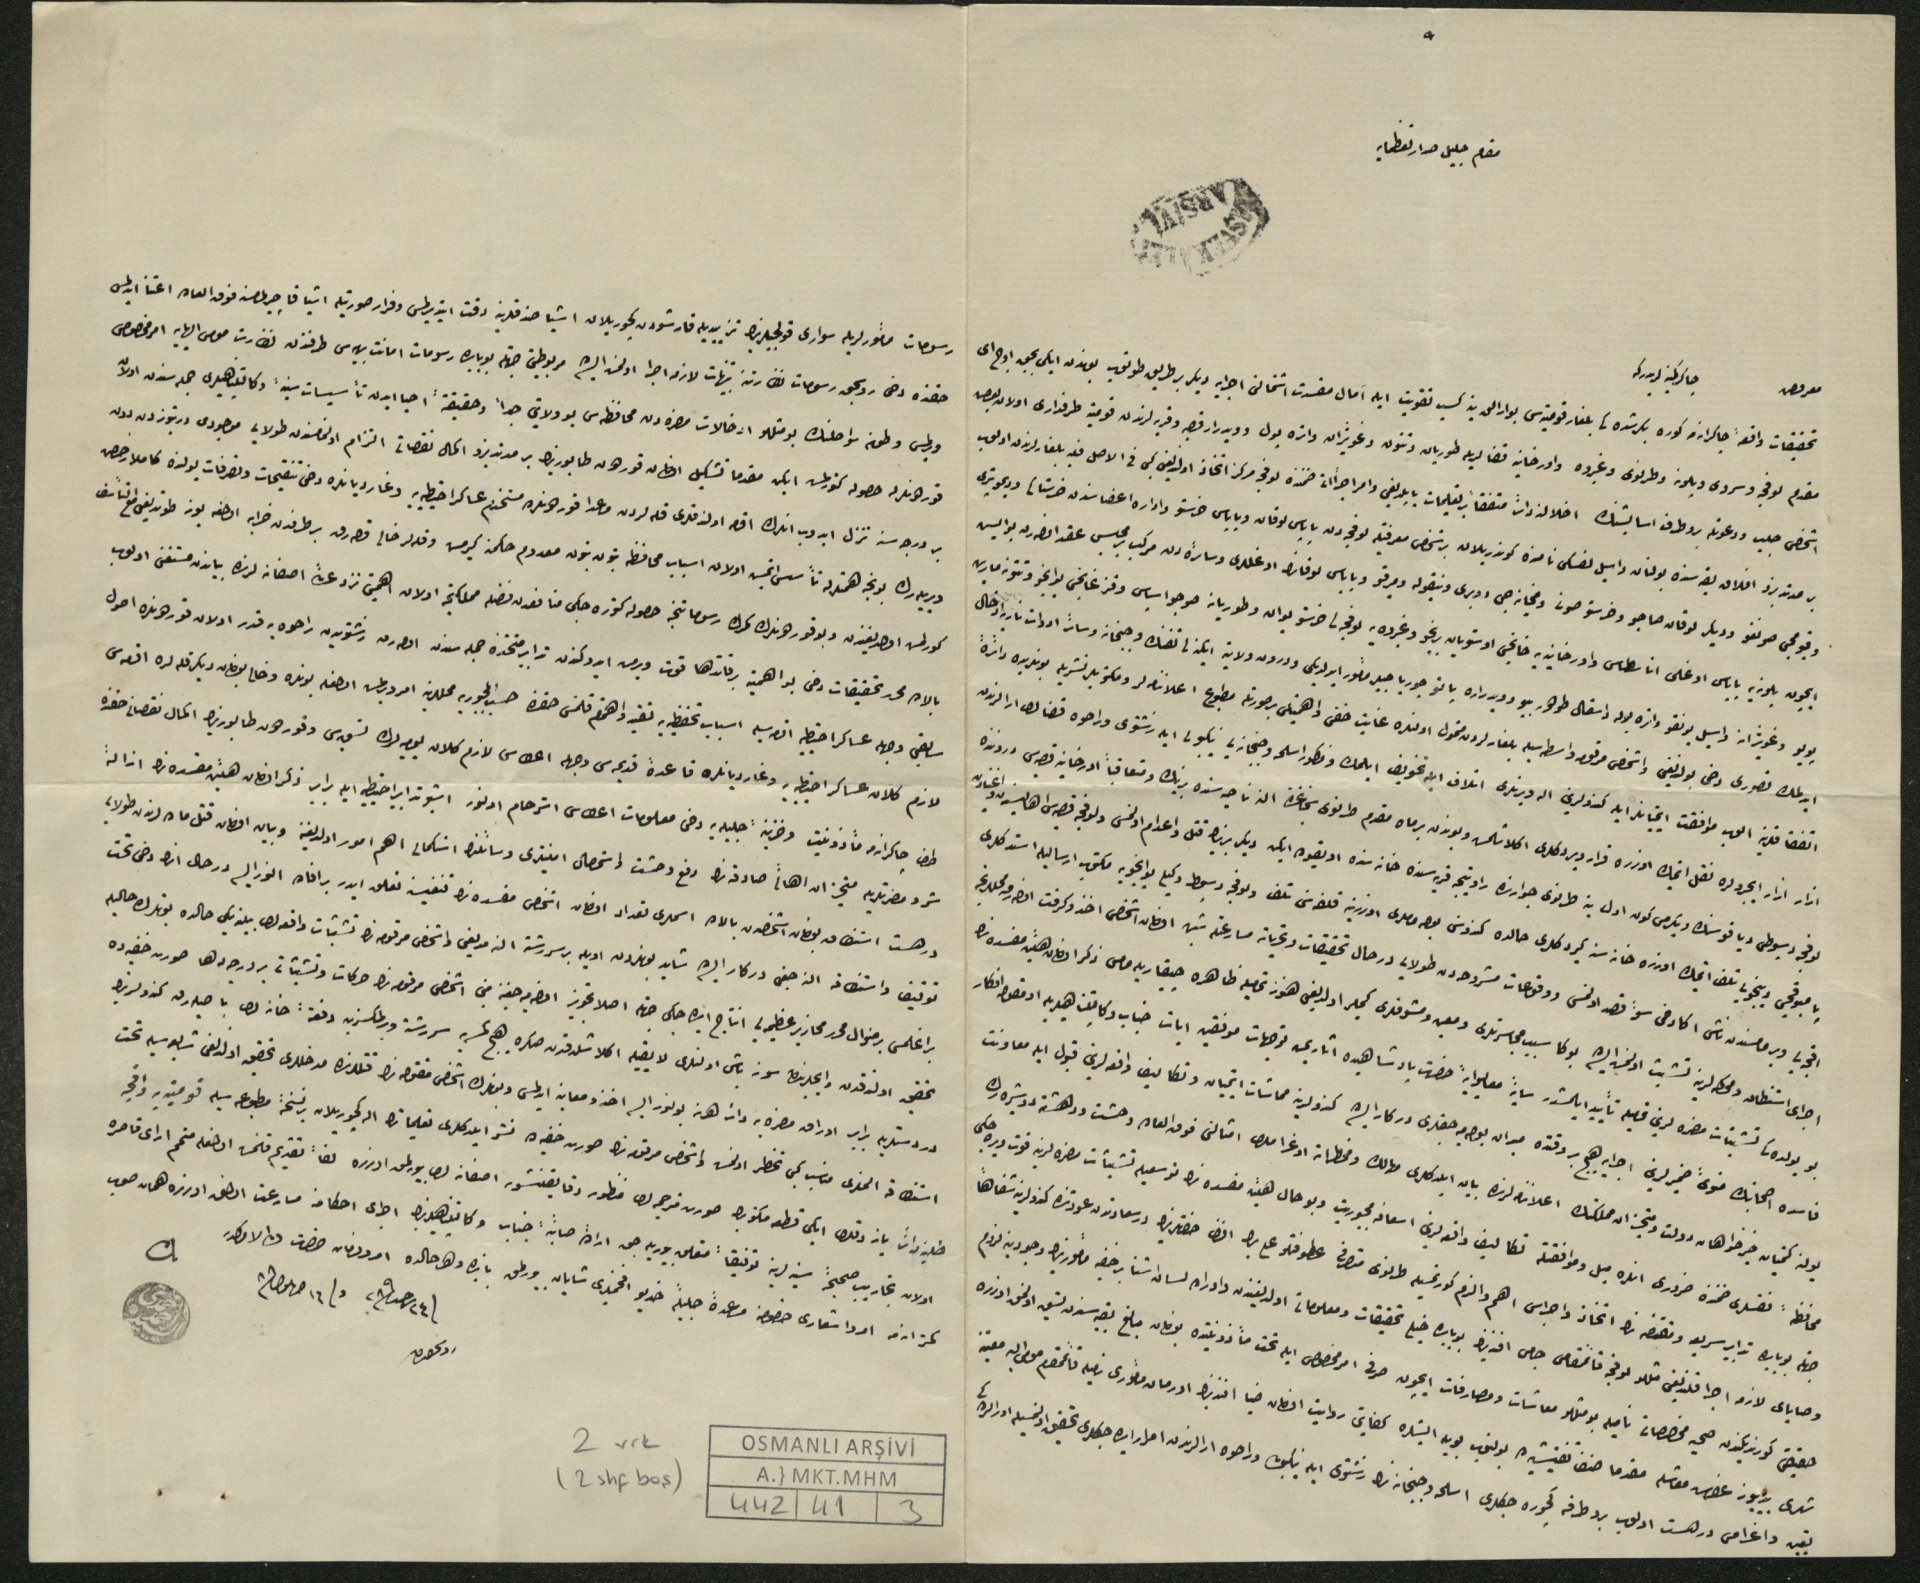  16 септемри 1872 година, Русе - Доклад от шефа на Дунавския вилает Ахмед Хамди паша до великия везир Мидхат паша по отношение на активността на БРЦК и ограниченията, които би трябвало да се подхващат за следене на комитетските дейци 